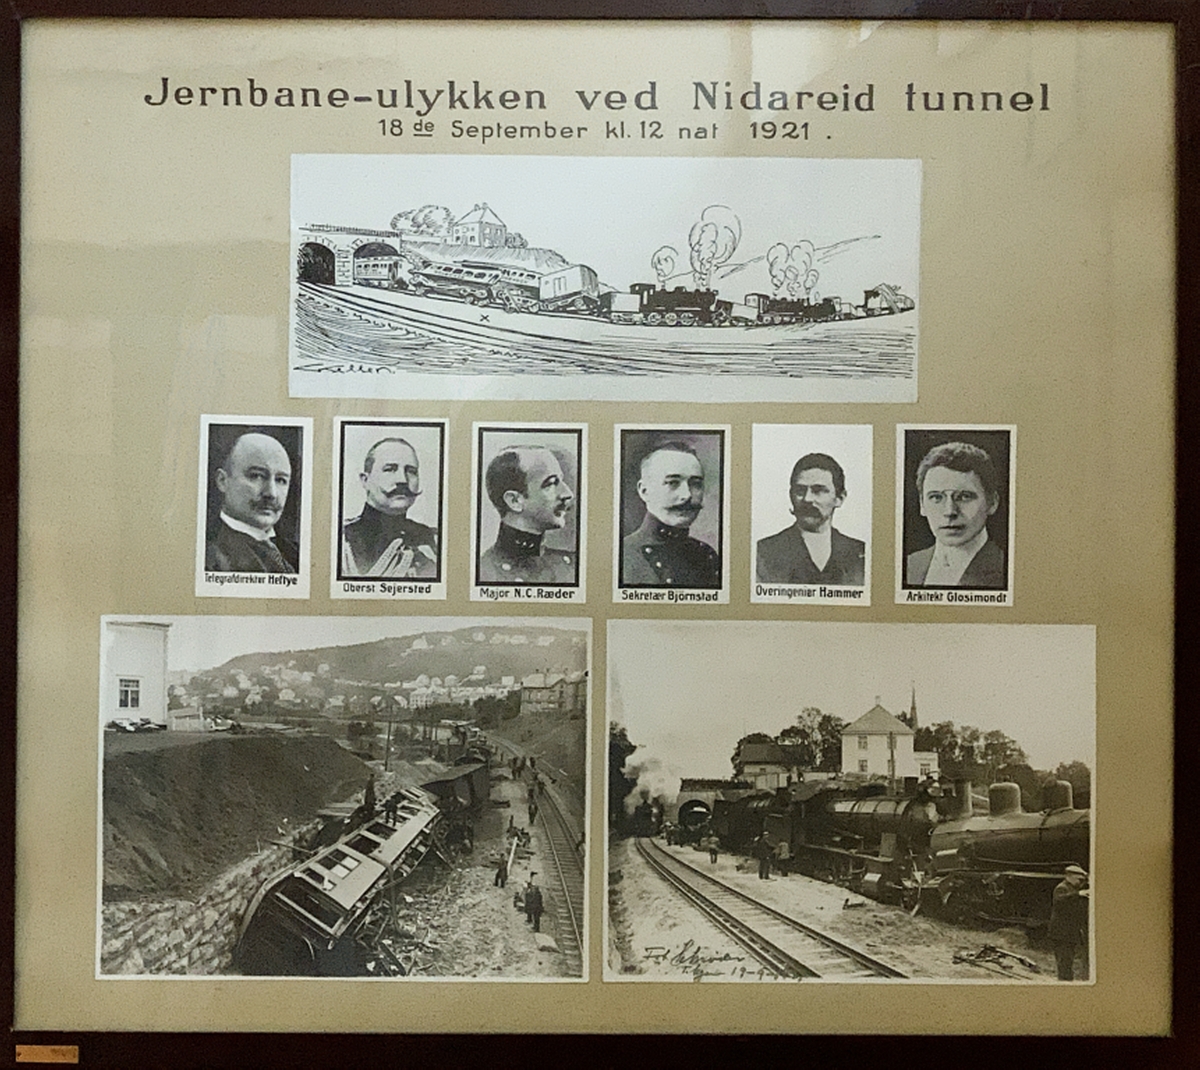 Jernbane-ulykken ved Nidareid tunnel. 18.09 kl 12 natt 1921